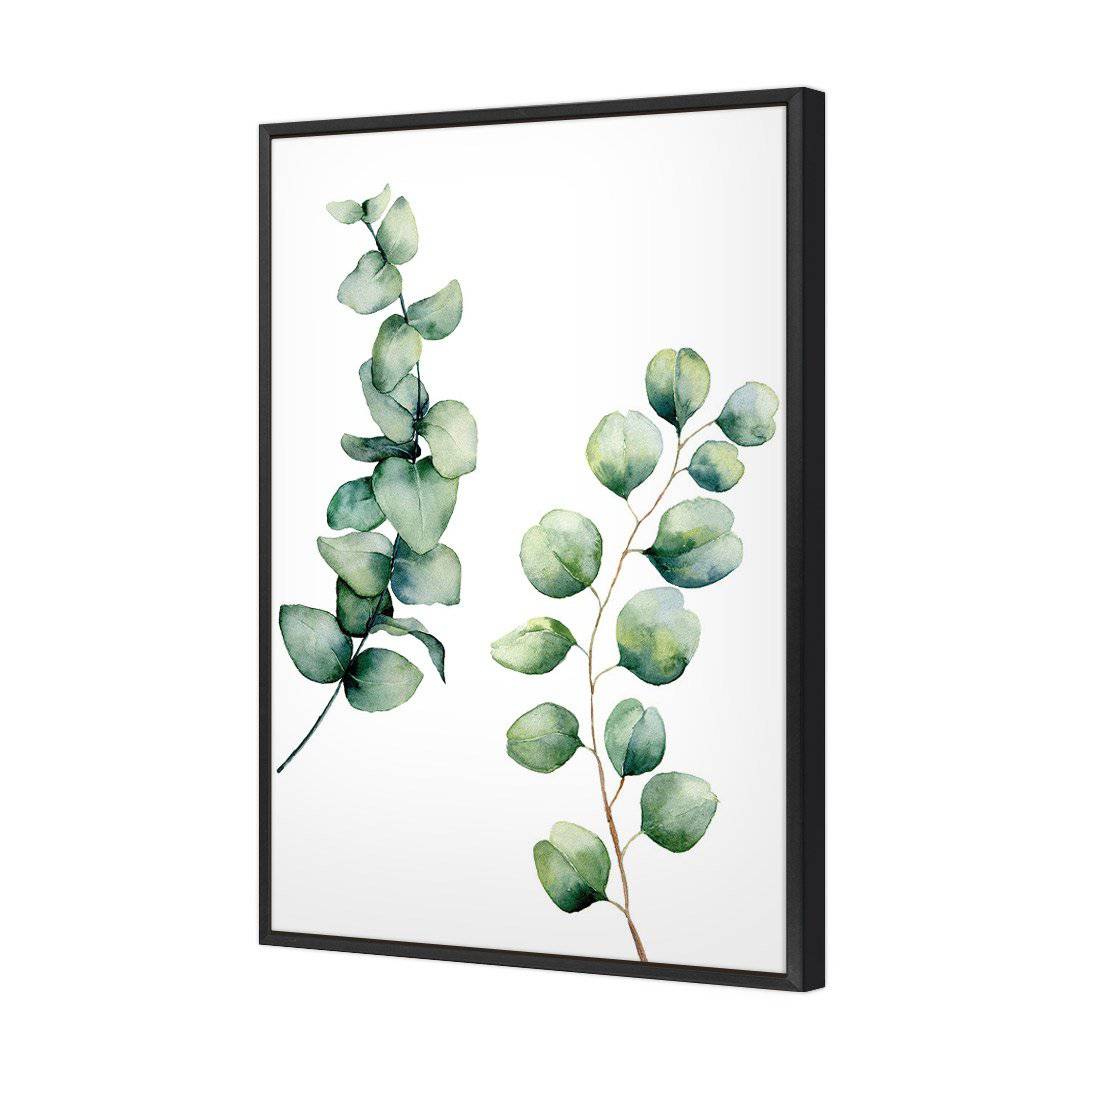 Eucalyptus Duo Canvas Art-Canvas-Wall Art Designs-45x30cm-Canvas - Black Frame-Wall Art Designs